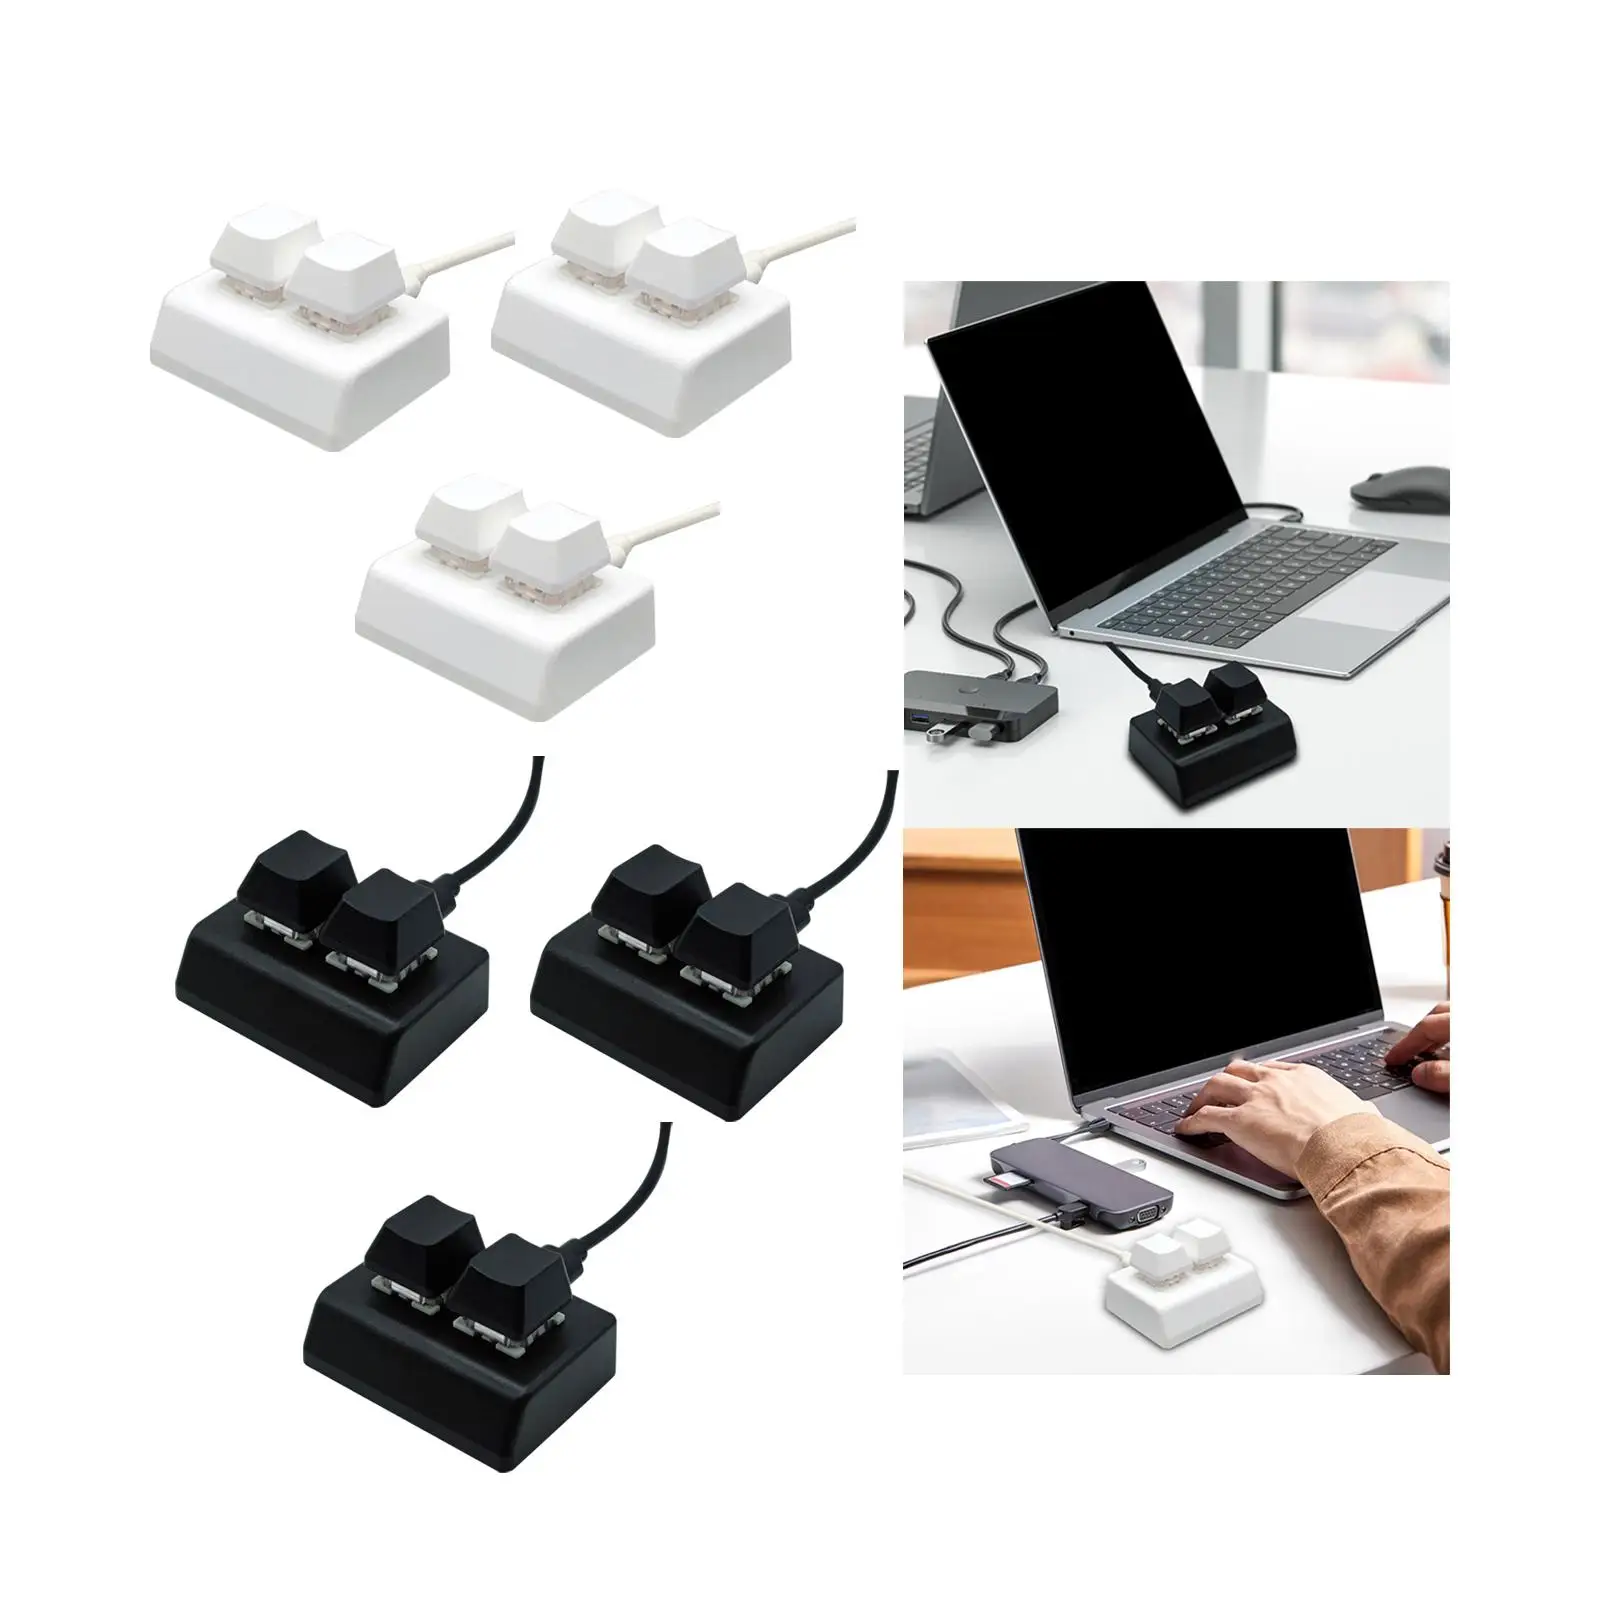 2 Key Backlit Mechanical Gaming Keyboard Programming Macro Keyboard for Audio Volume Control Programming Drawing Gaming Switch